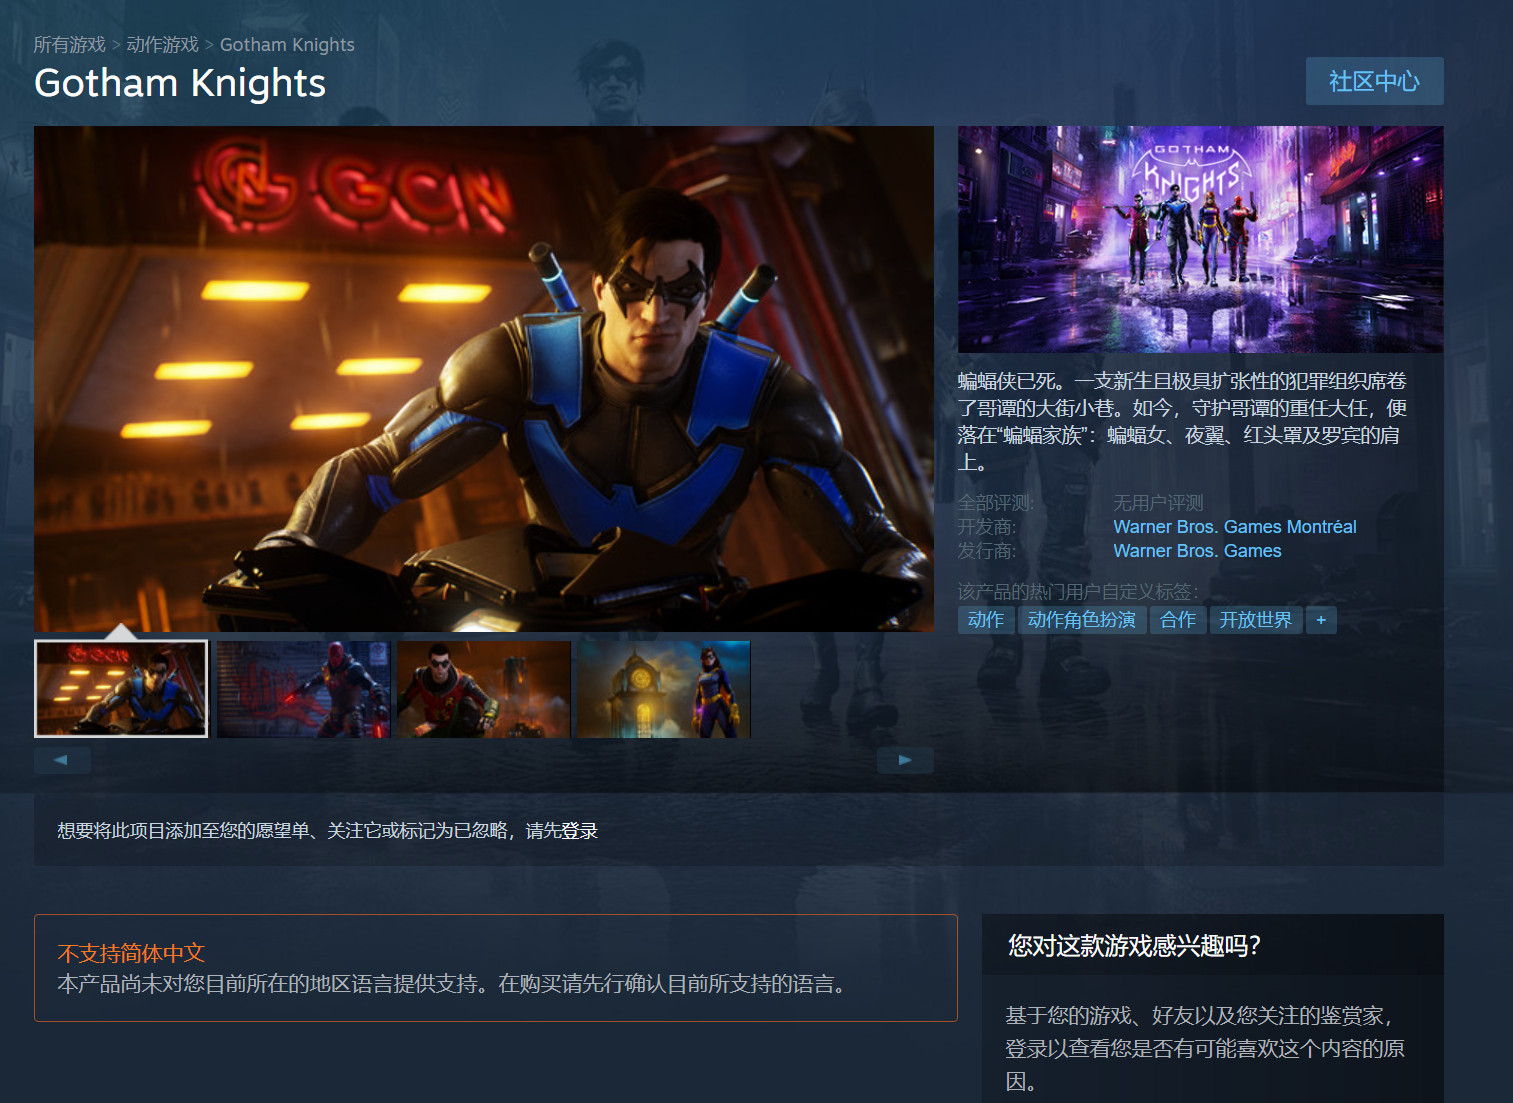 华纳《哥谭骑士》Steam页面上线 不支持中文